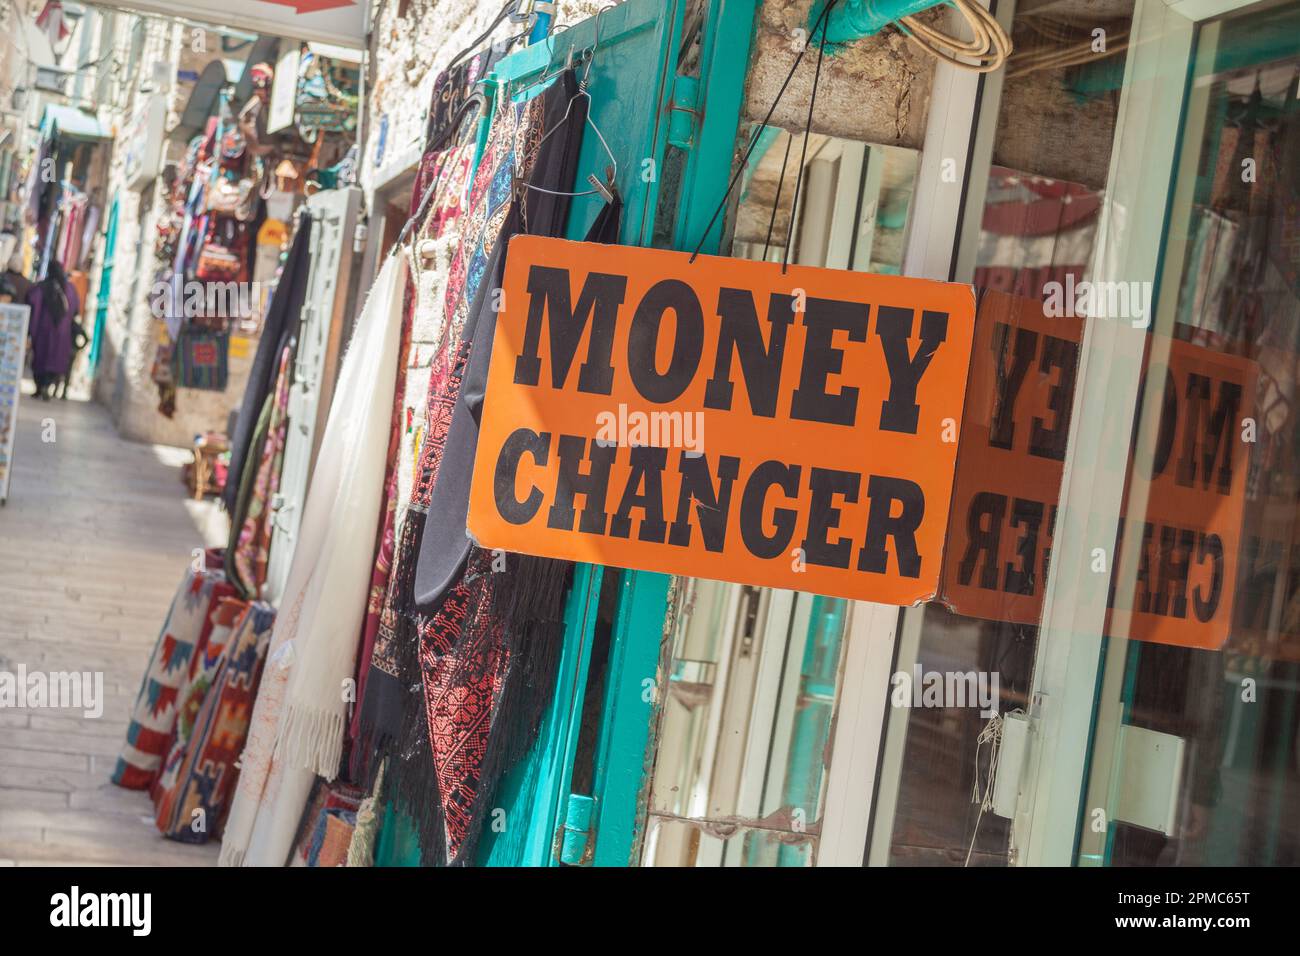 Una tienda de ropa local en Palestina con instalaciones para cambiar dinero Foto de stock